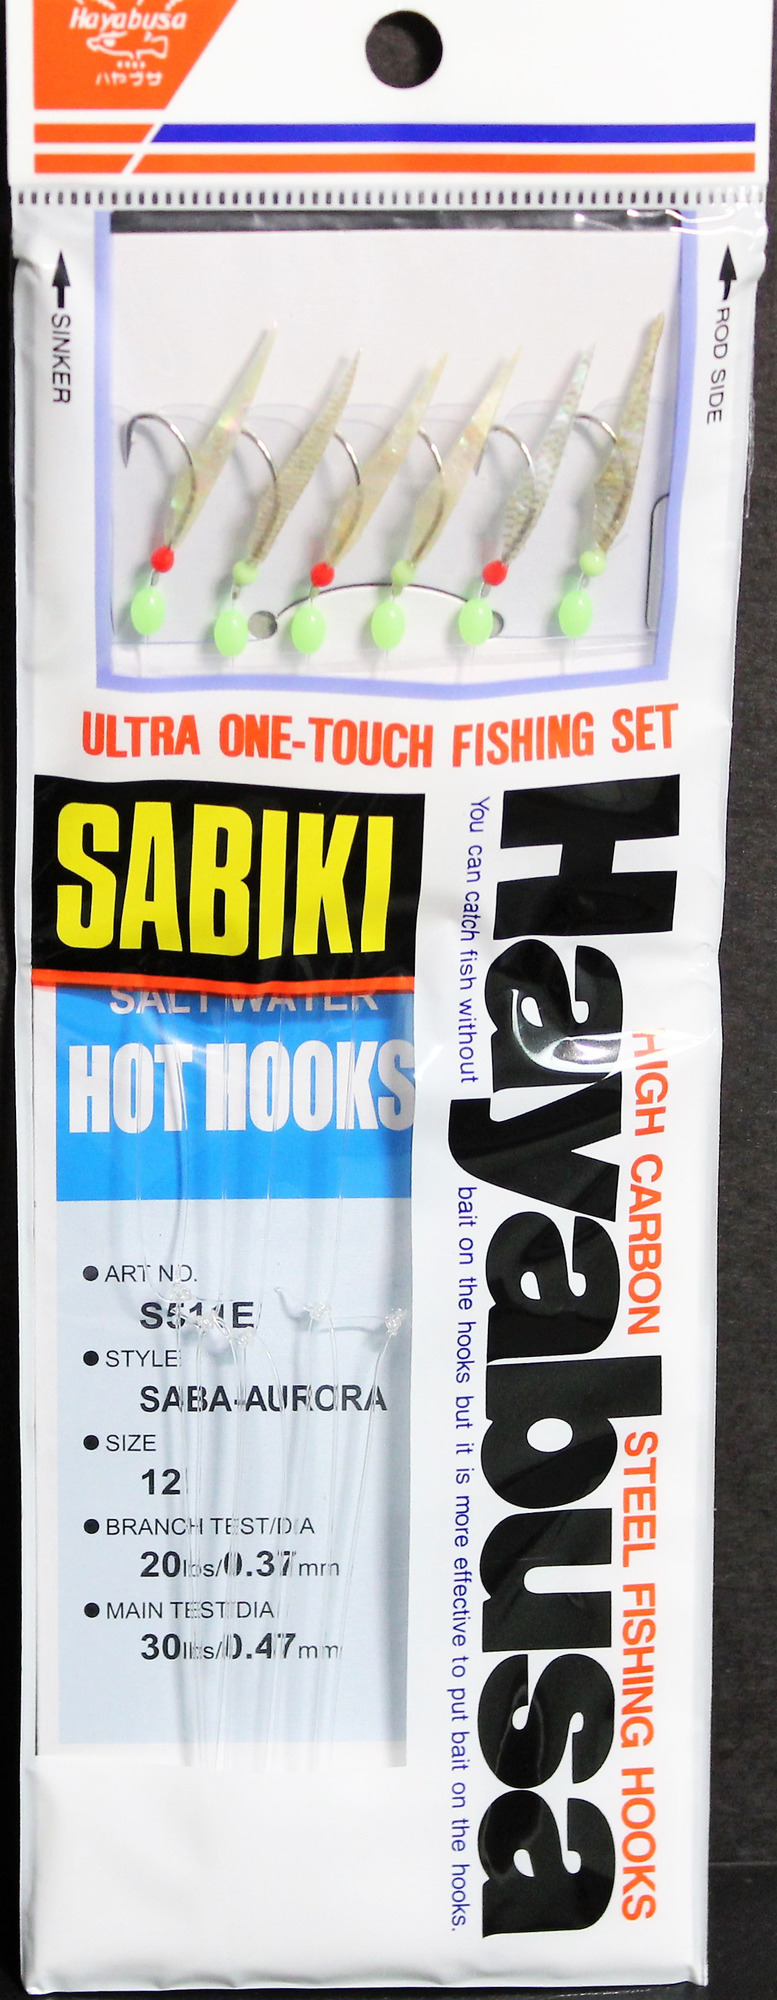 Hayabusa Sabiki Fluorocarbon Rig Size 8 - Hage Fish Skin. Aurora Finish